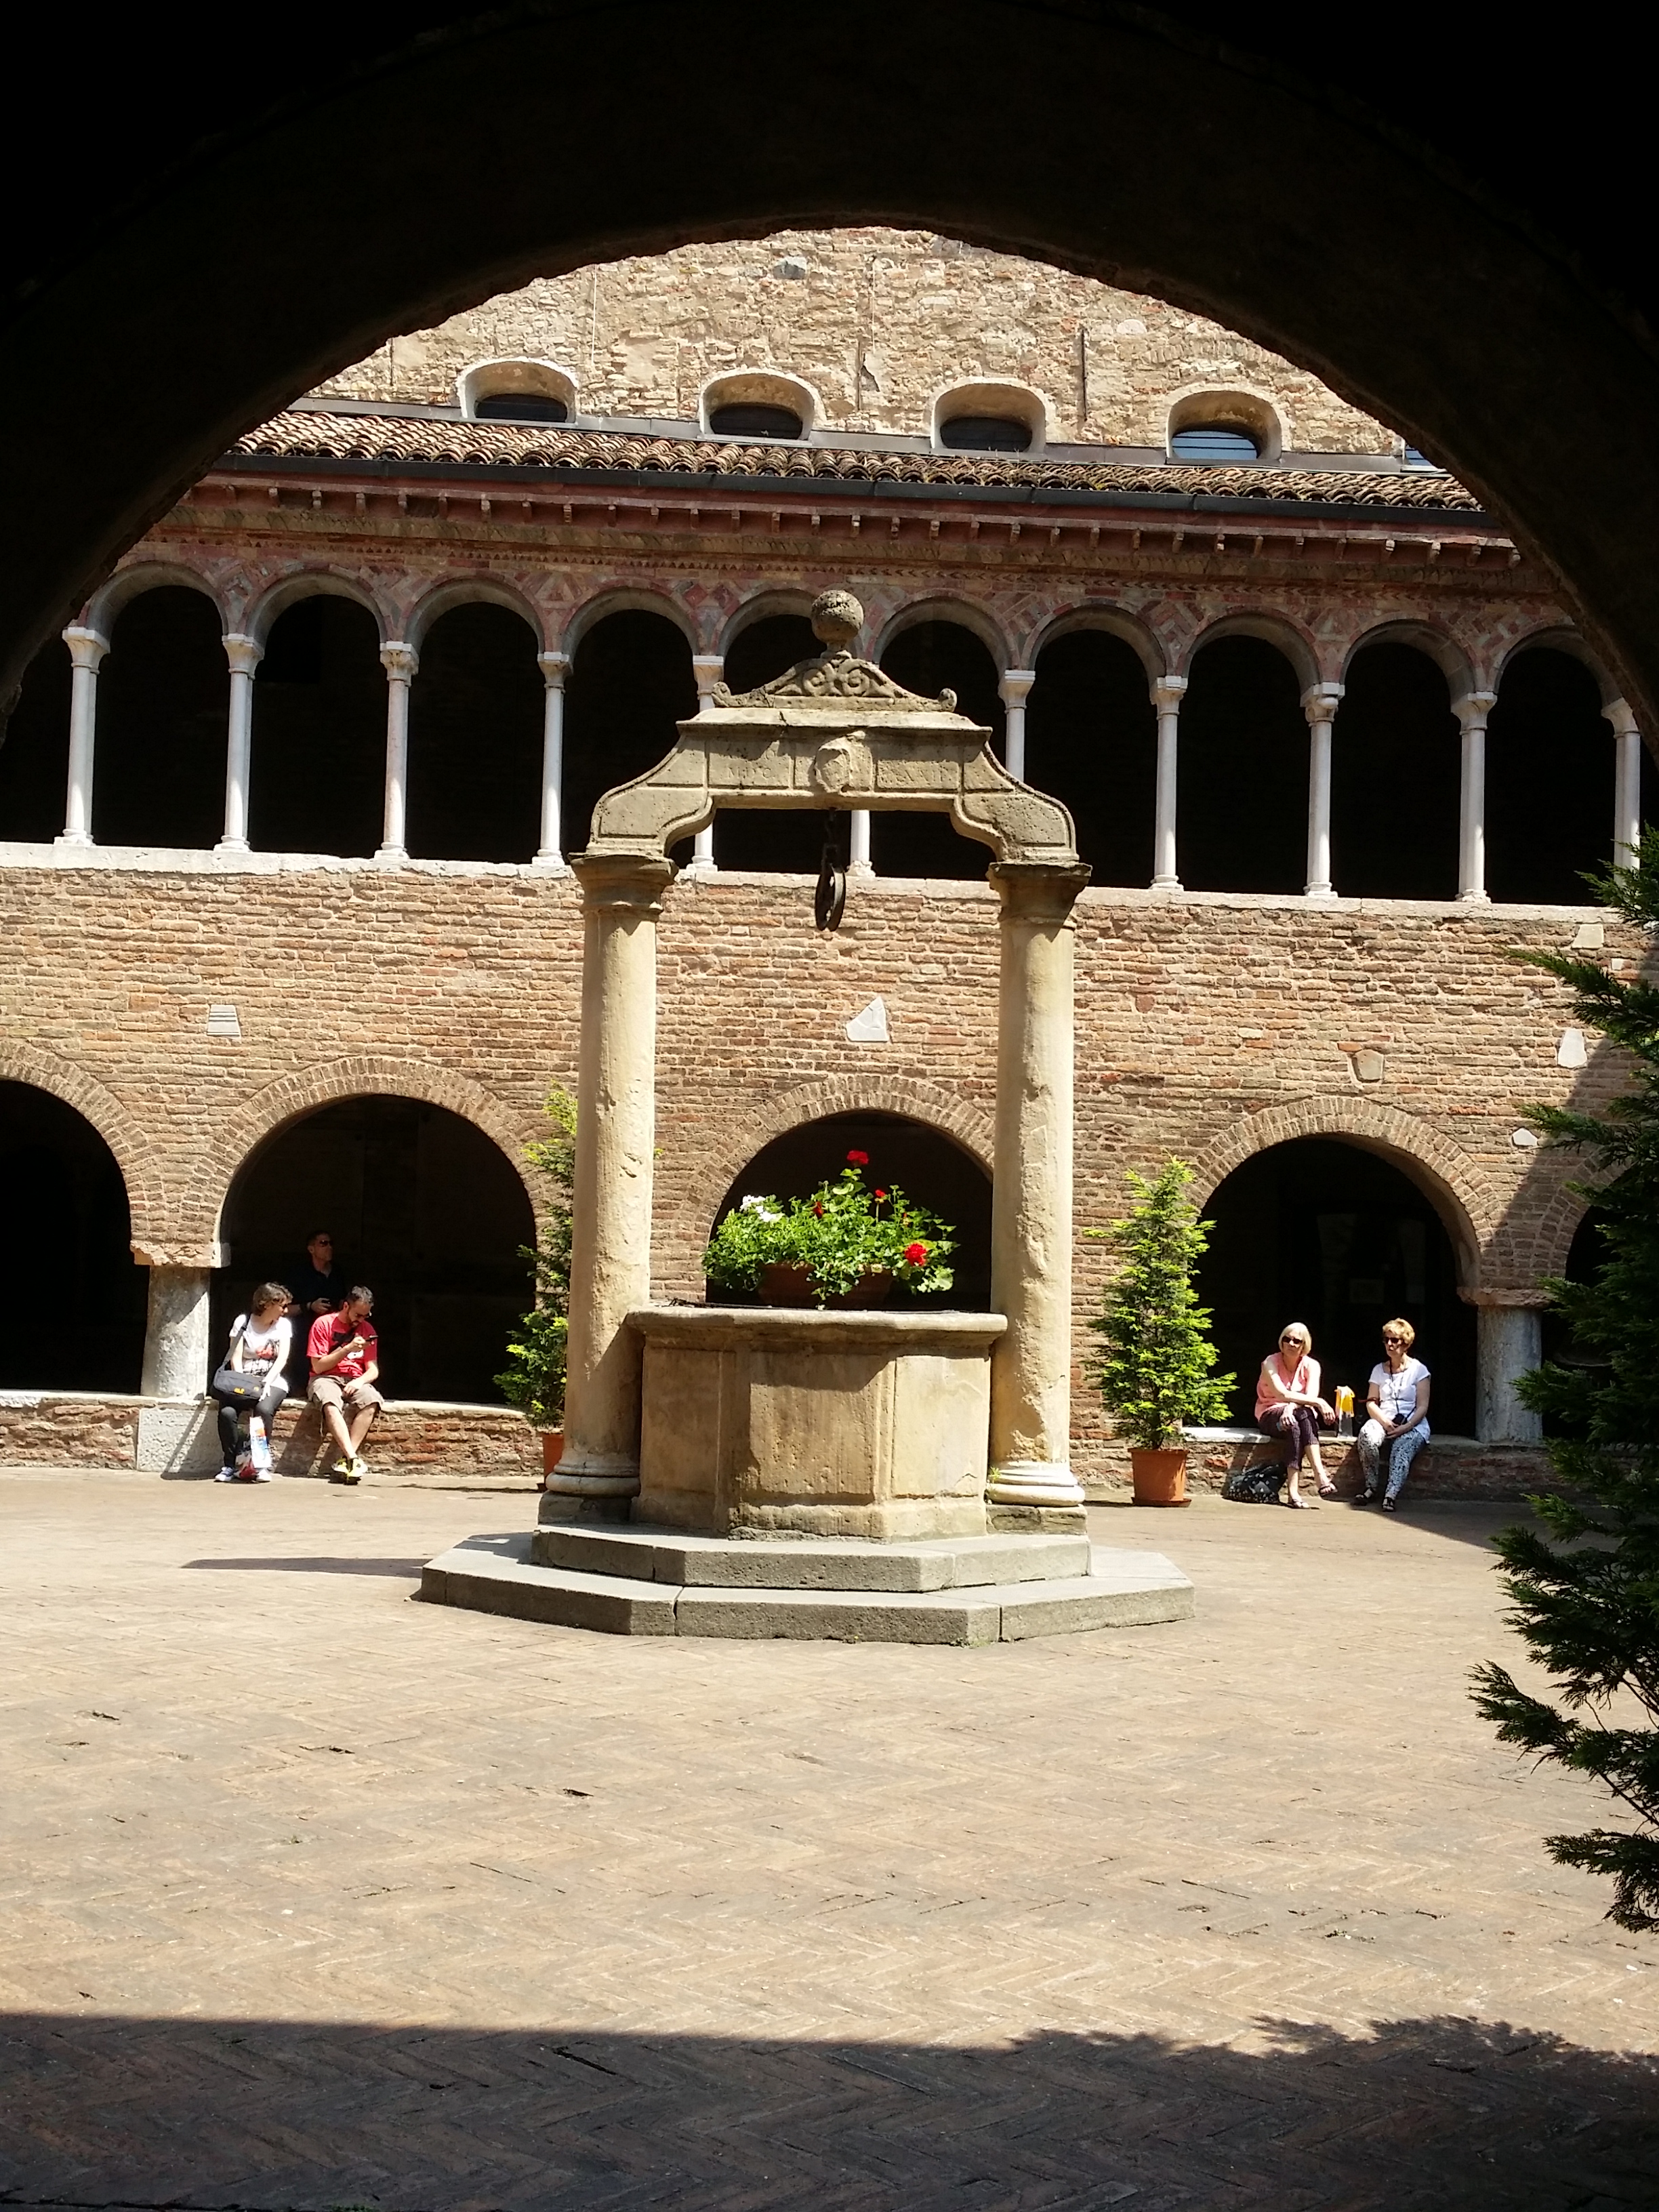 foto: https://upload.wikimedia.org/wikipedia/commons/1/1a/Particolare_Basilica_Santo_Stefano_Bologna.jpg